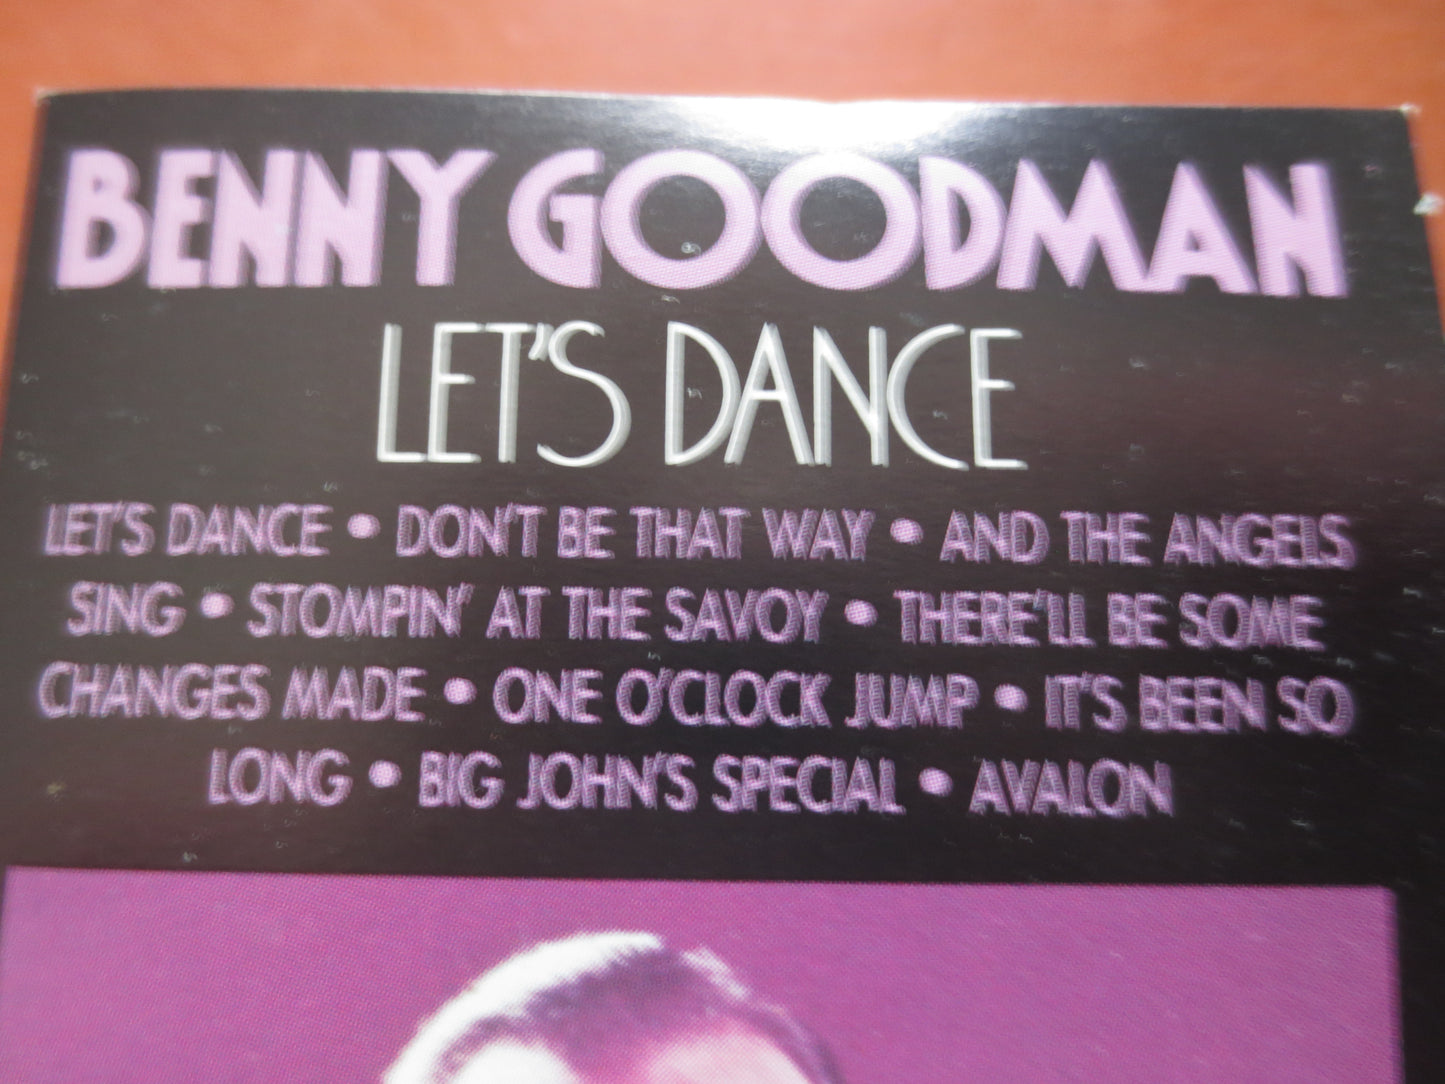 BENNY GOODMAN Tape, Let's DANCE Album, Benny Goodman, Jazz Music, Jazz Tape, Jazz Cassette, Tape Cassette, 1984 Cassette